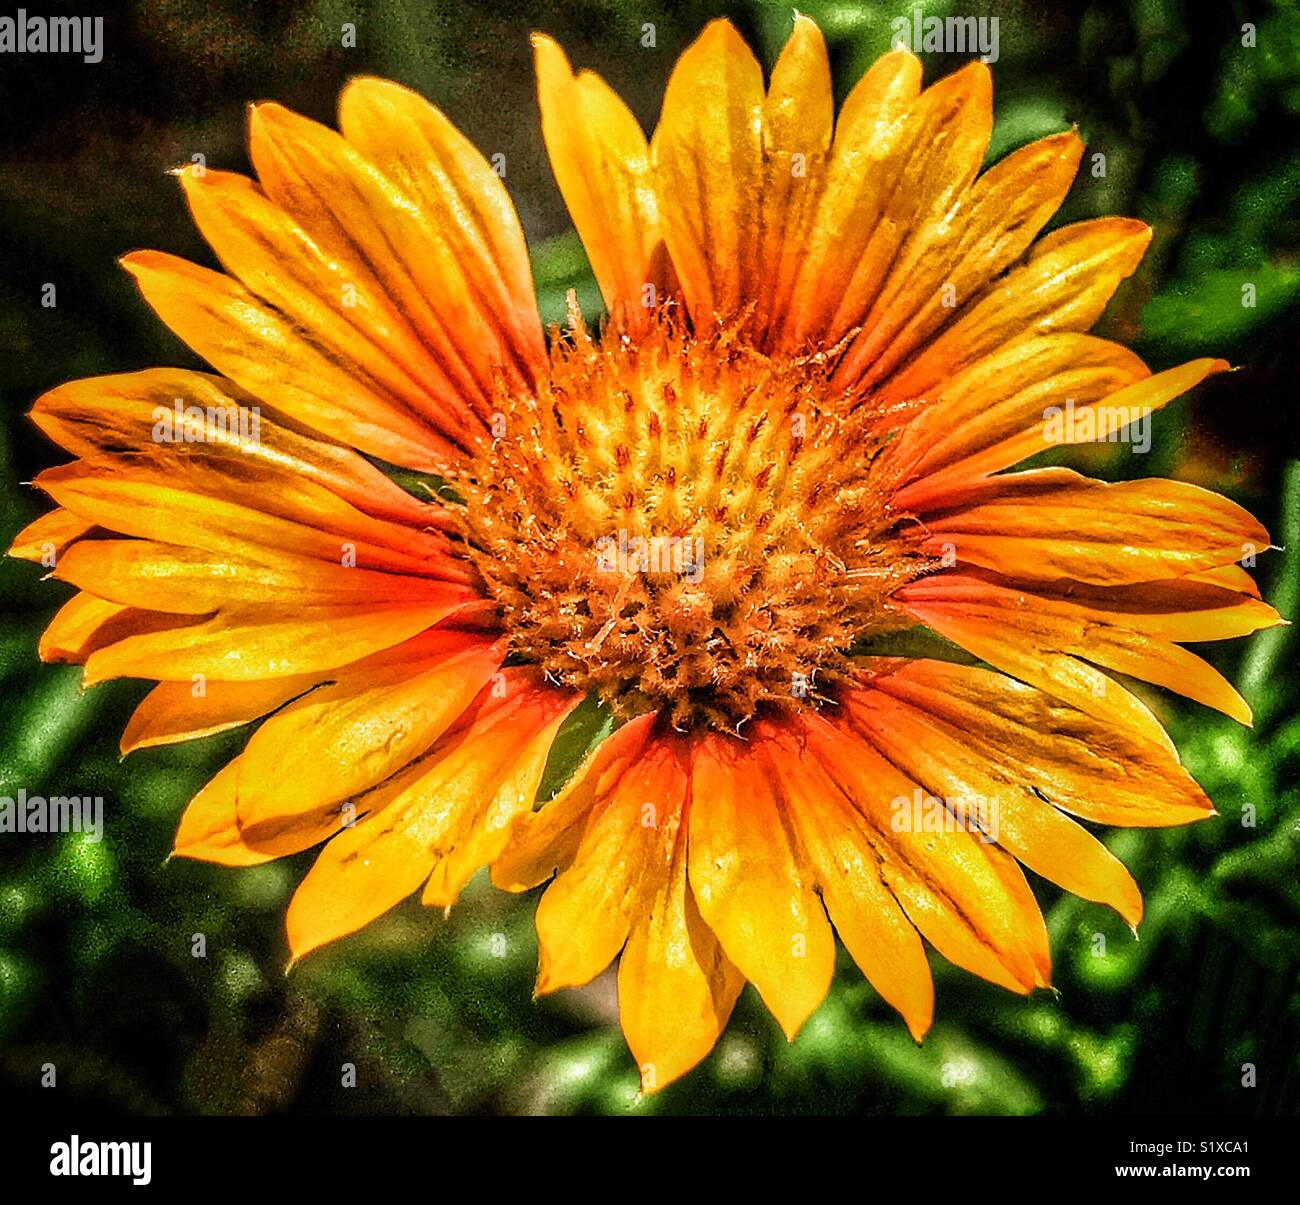 Jaune Orange fleur dans la lumière du soleil, Pêche Melba Blanket flower close up, Gaillardia pêche melba Banque D'Images